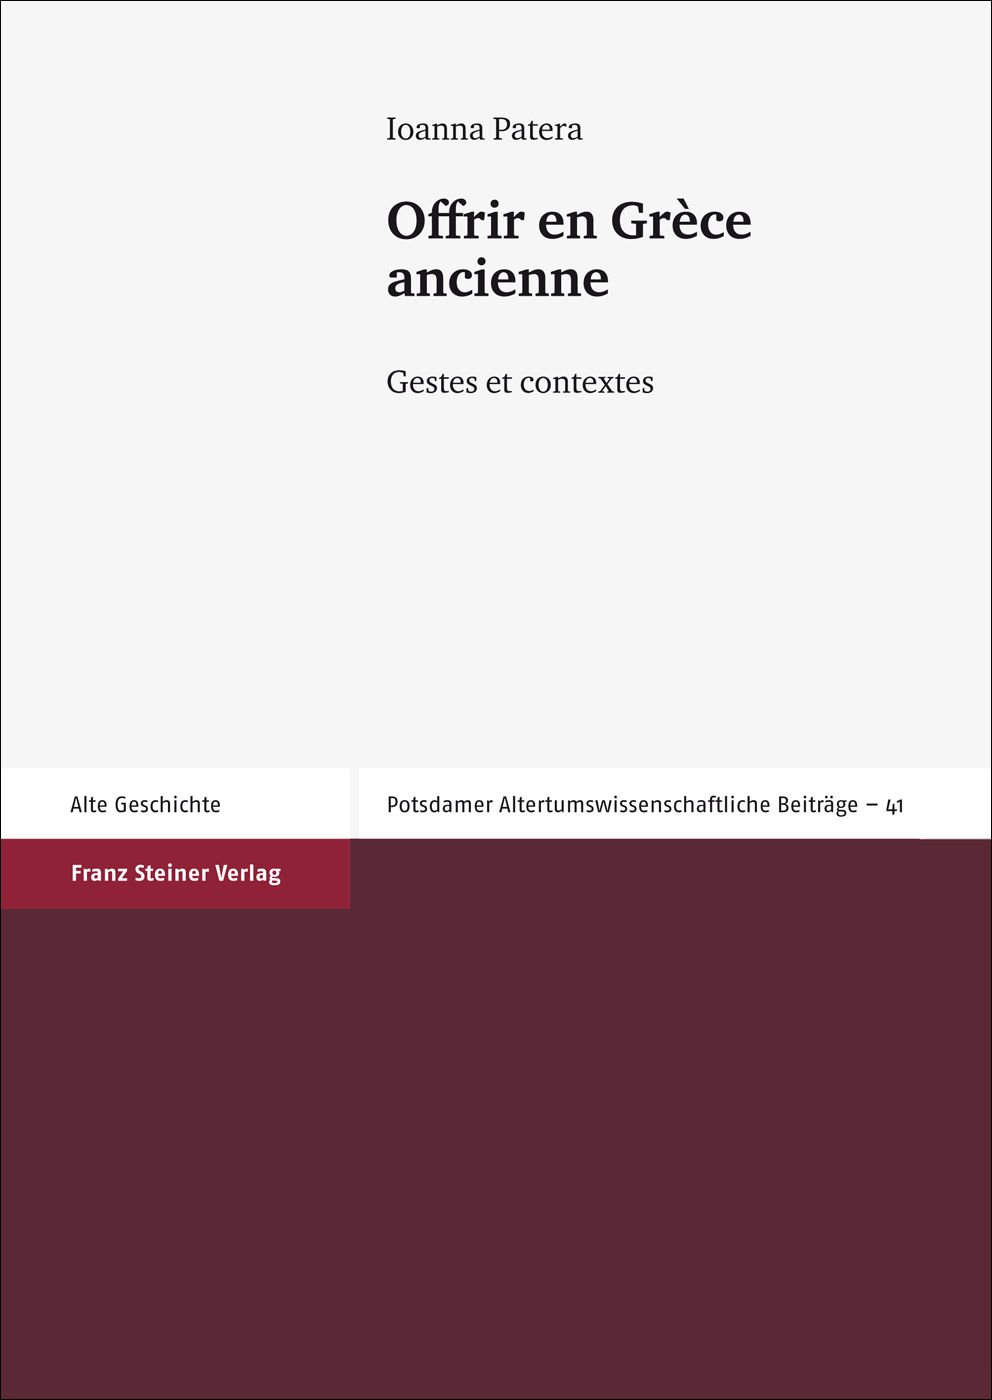 Offrir en Grèce ancienne. Gestes et contextes, 2012, 292 p., 22 ill. n.b.